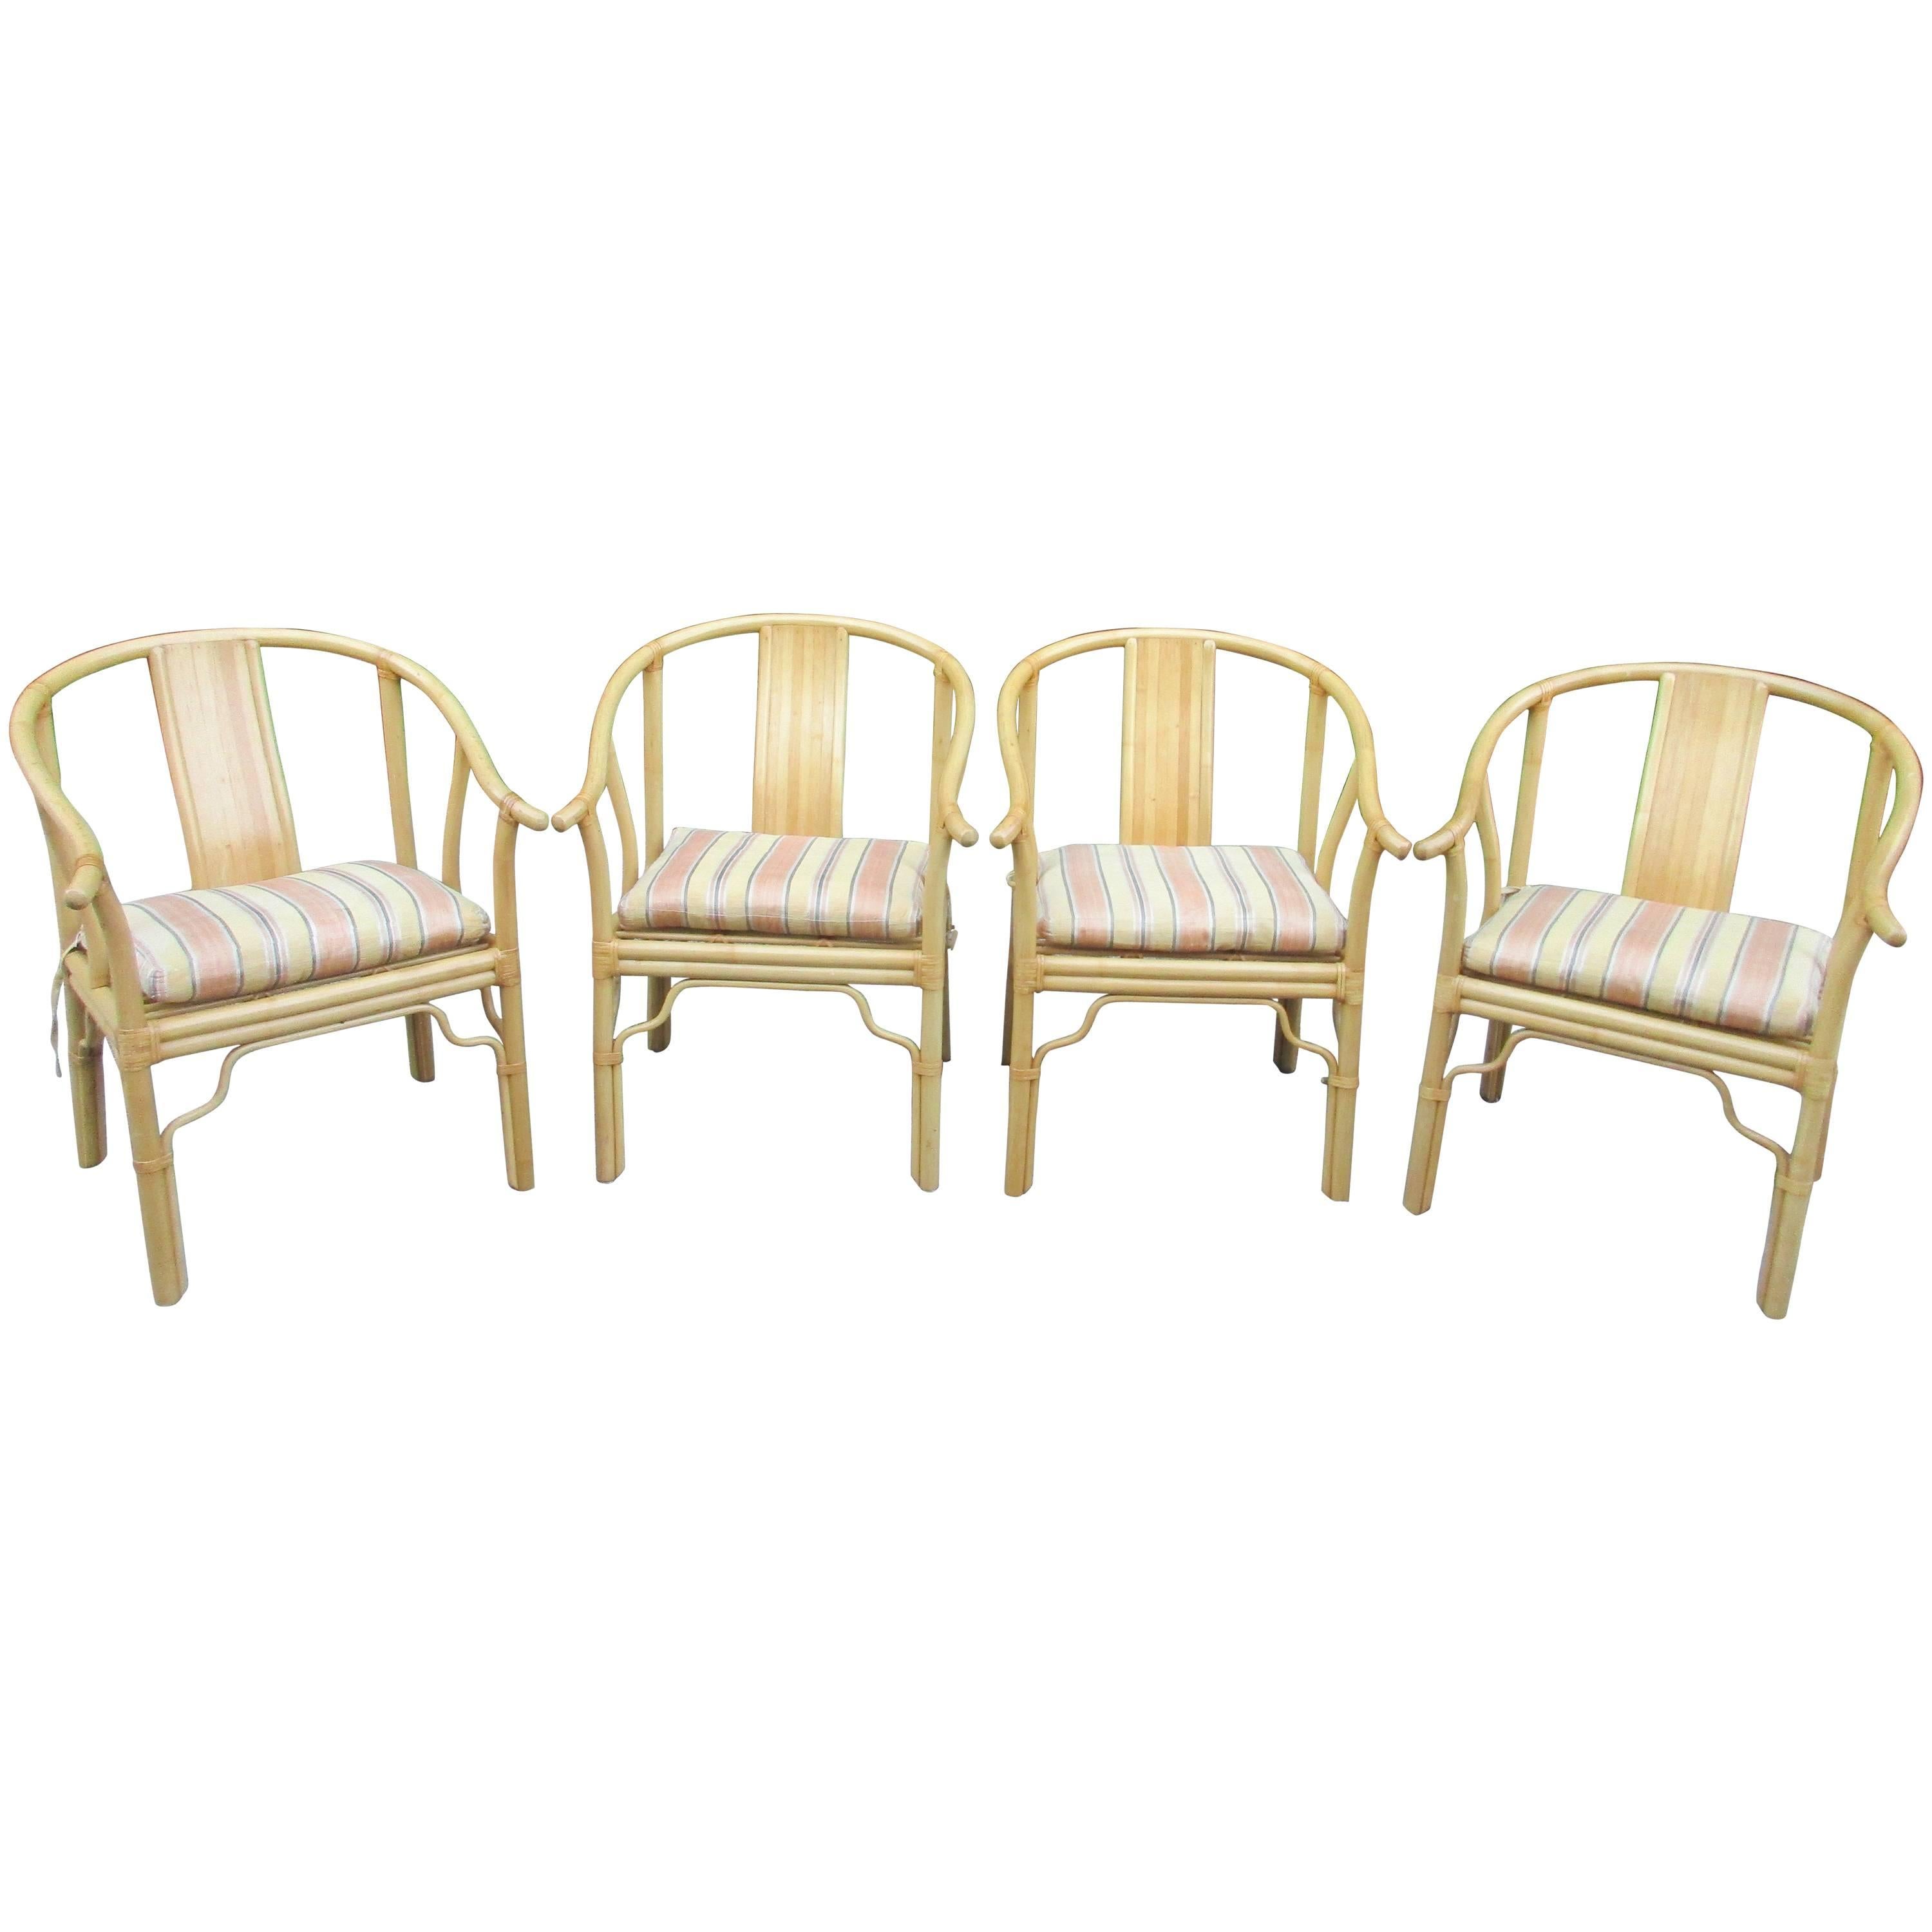 Quatre fauteuils vintage en bambou avec coussins personnalisés